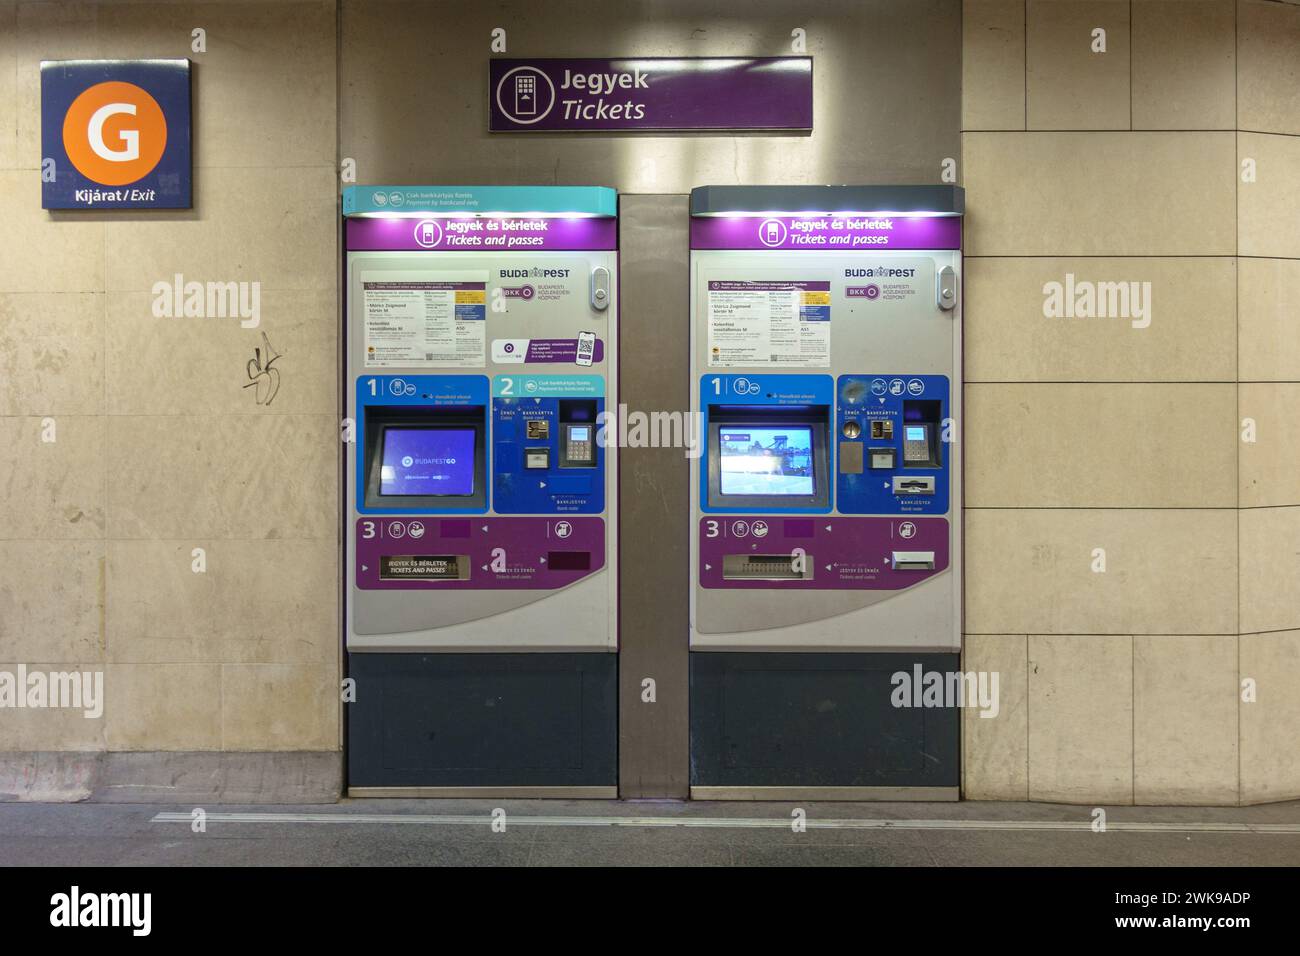 Deux distributeurs automatiques de billets de transport public BKK dans un passage souterrain de Budapest Banque D'Images